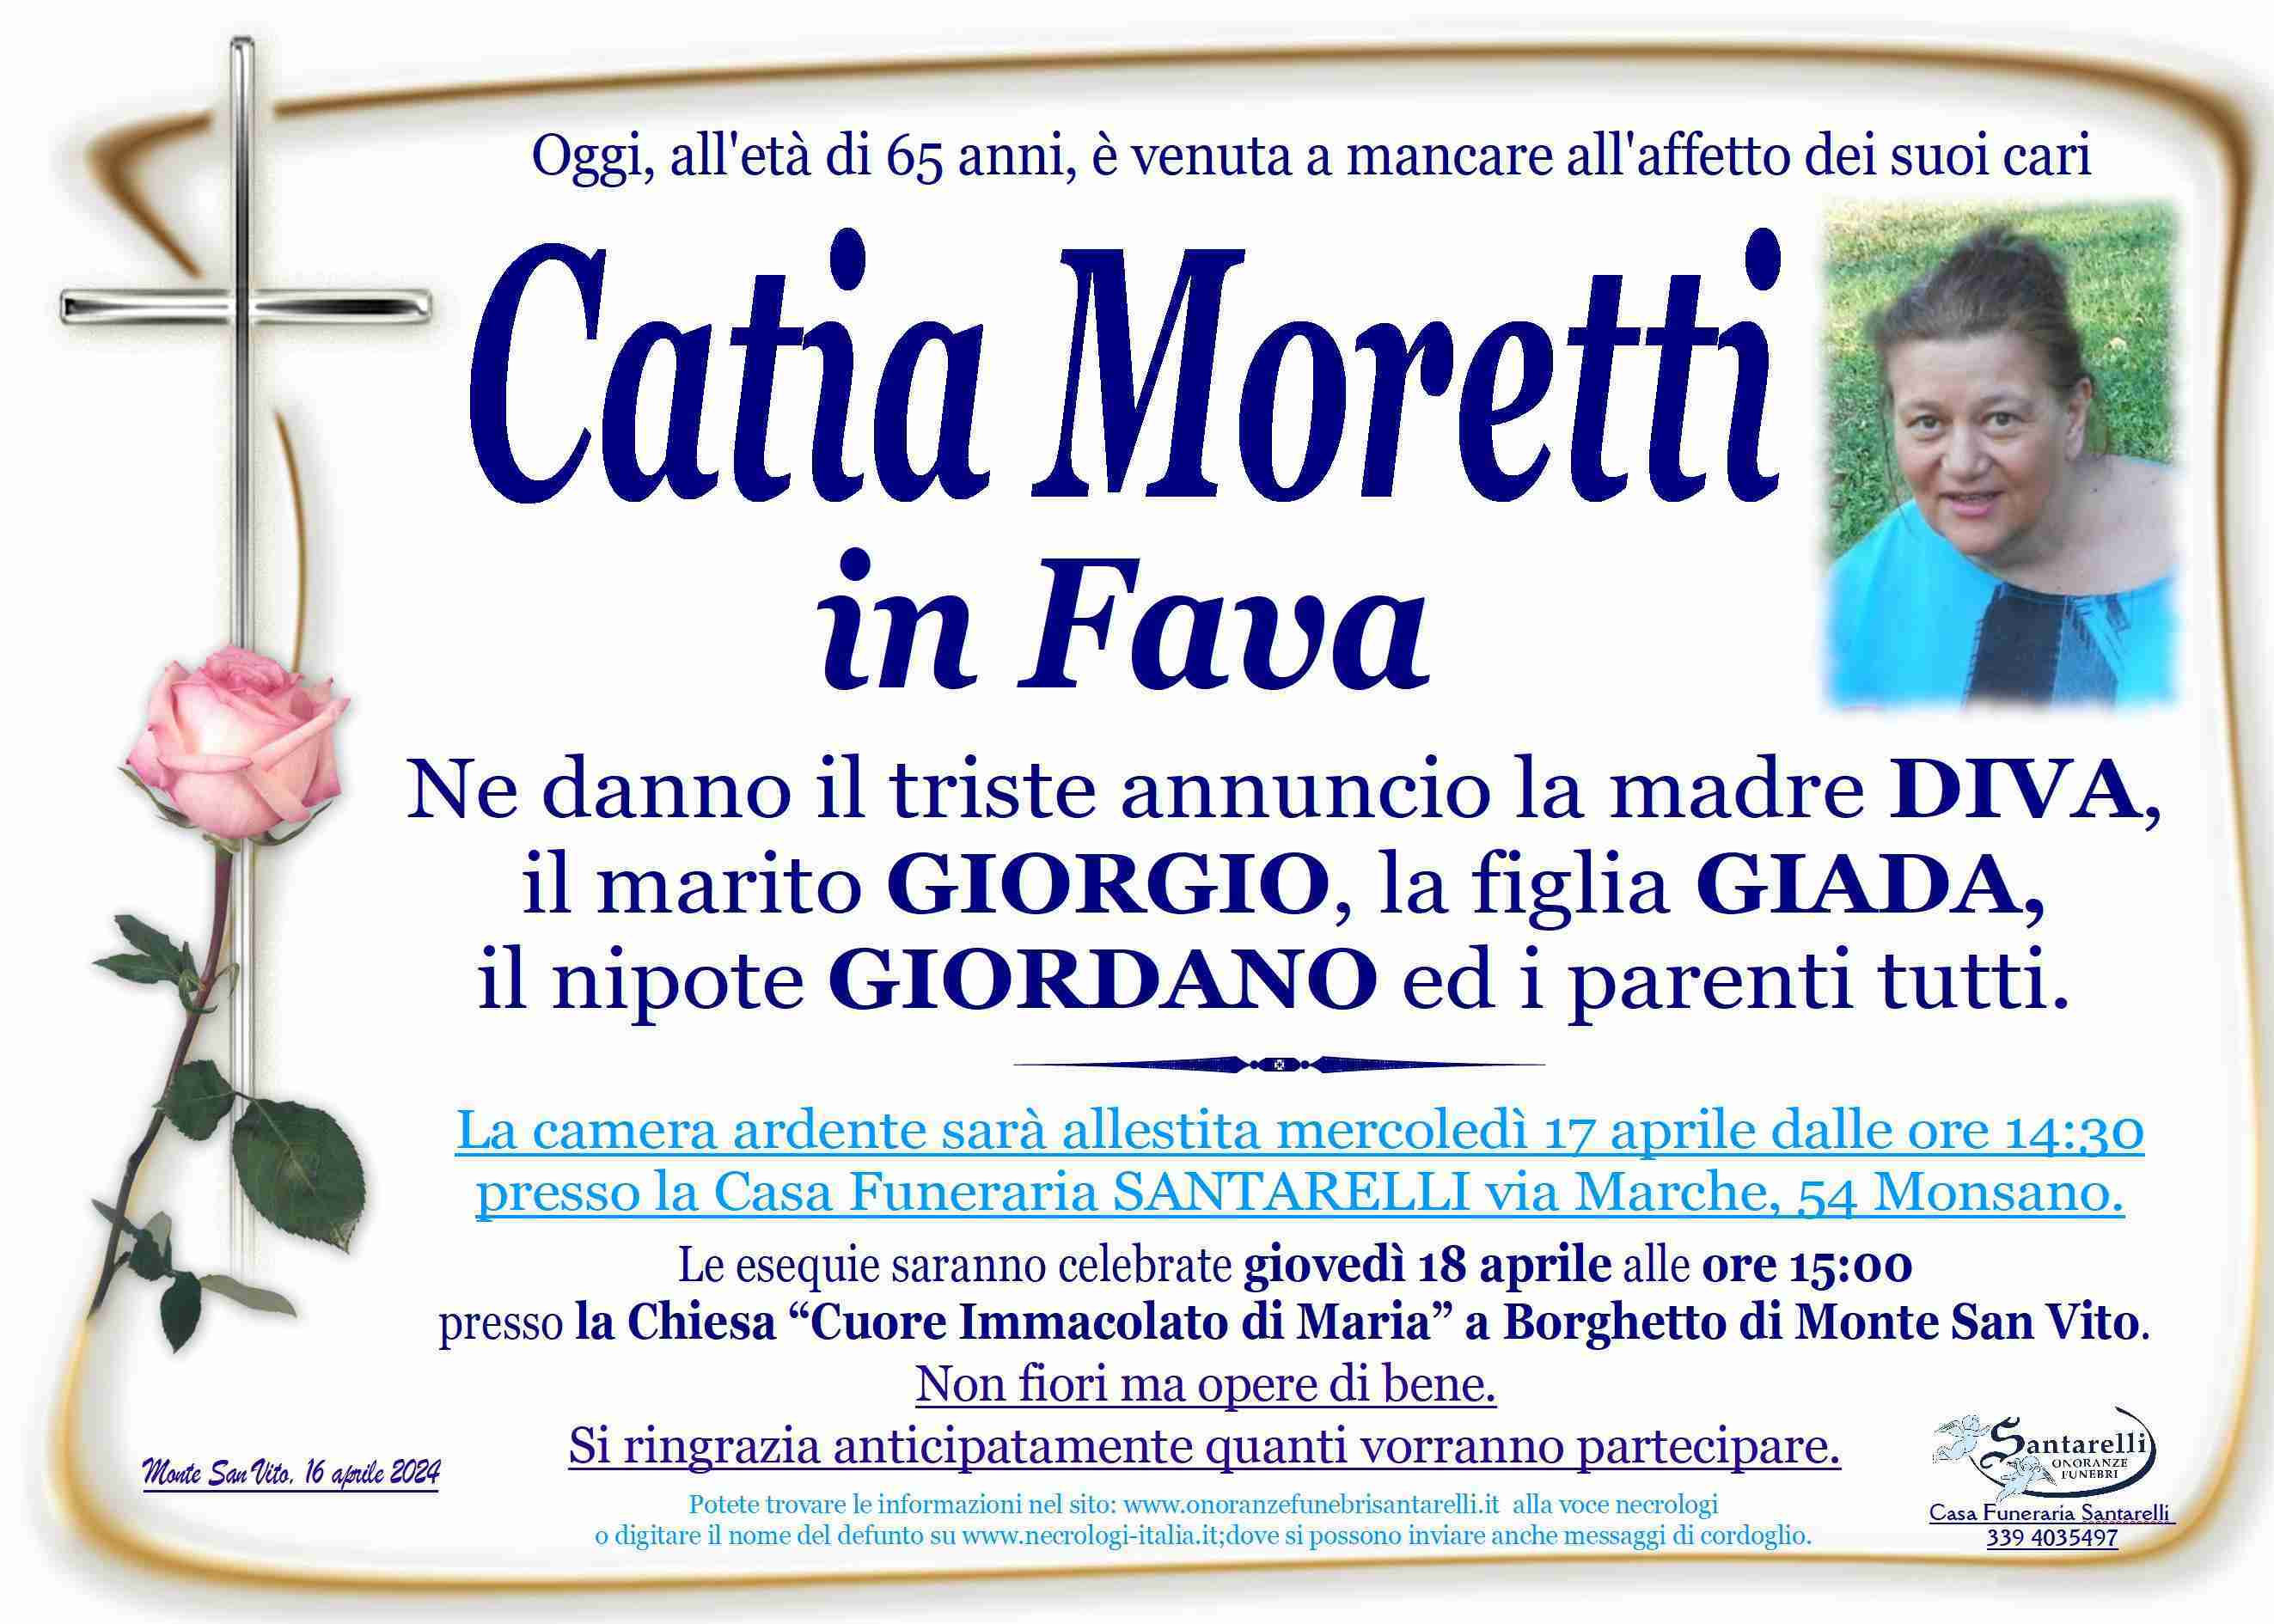 Catia Moretti